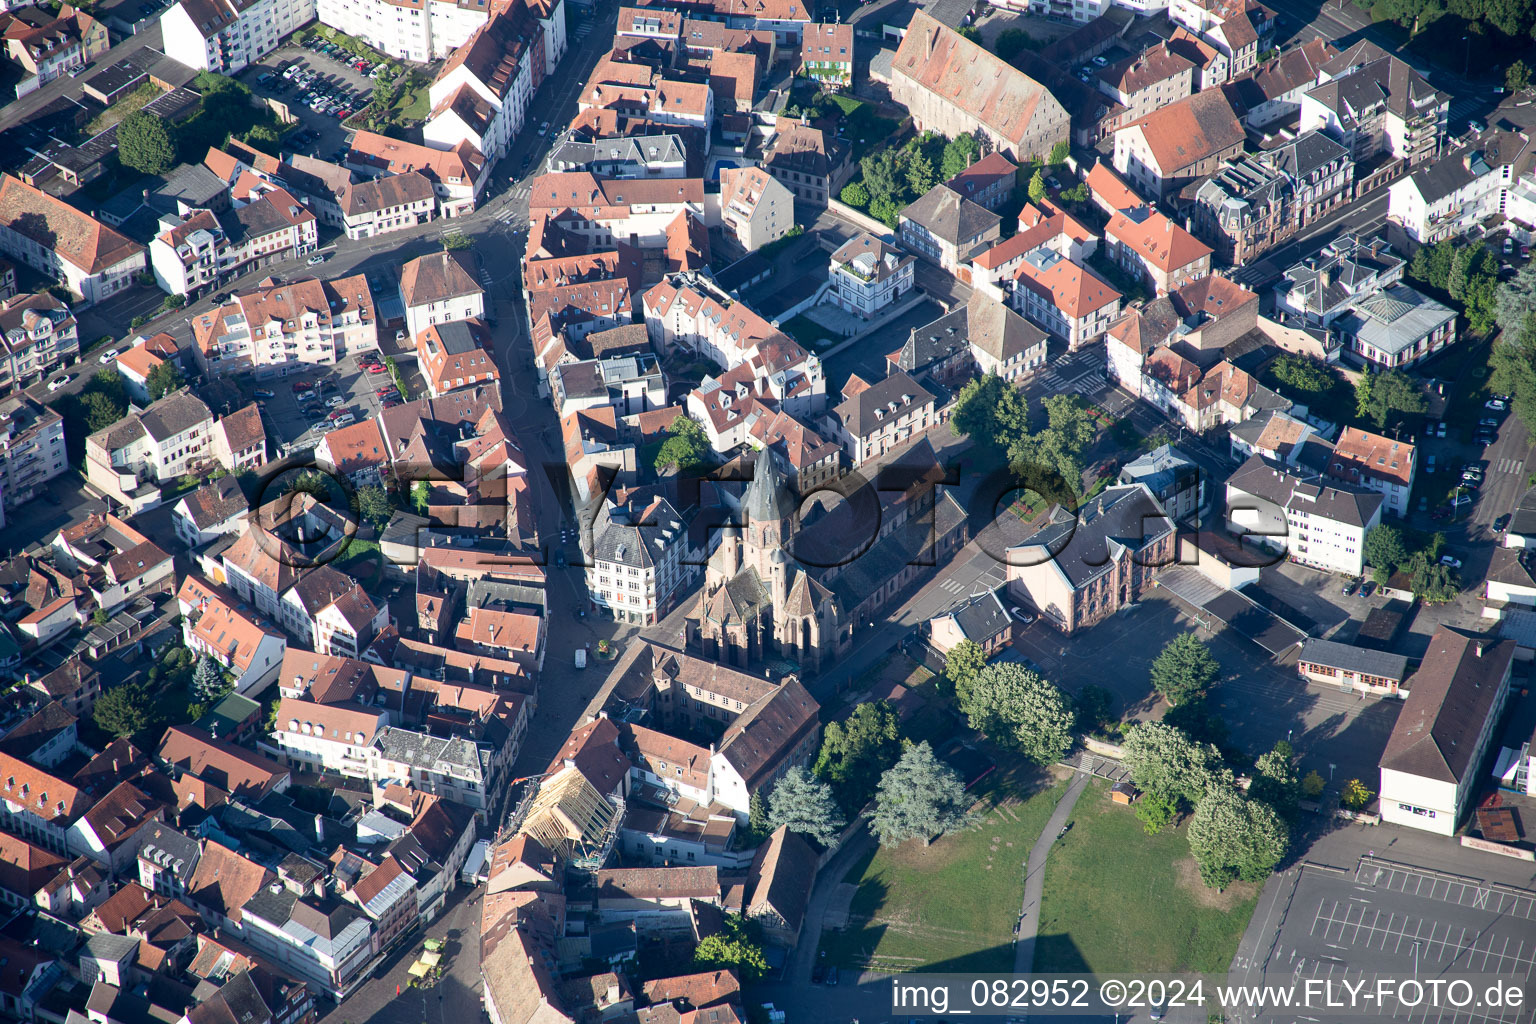 Vue aérienne de Bâtiment de l'église Saint Georges dans le centre ancien du centre-ville de Haguenau à Hagenau dans le département Bas Rhin, France